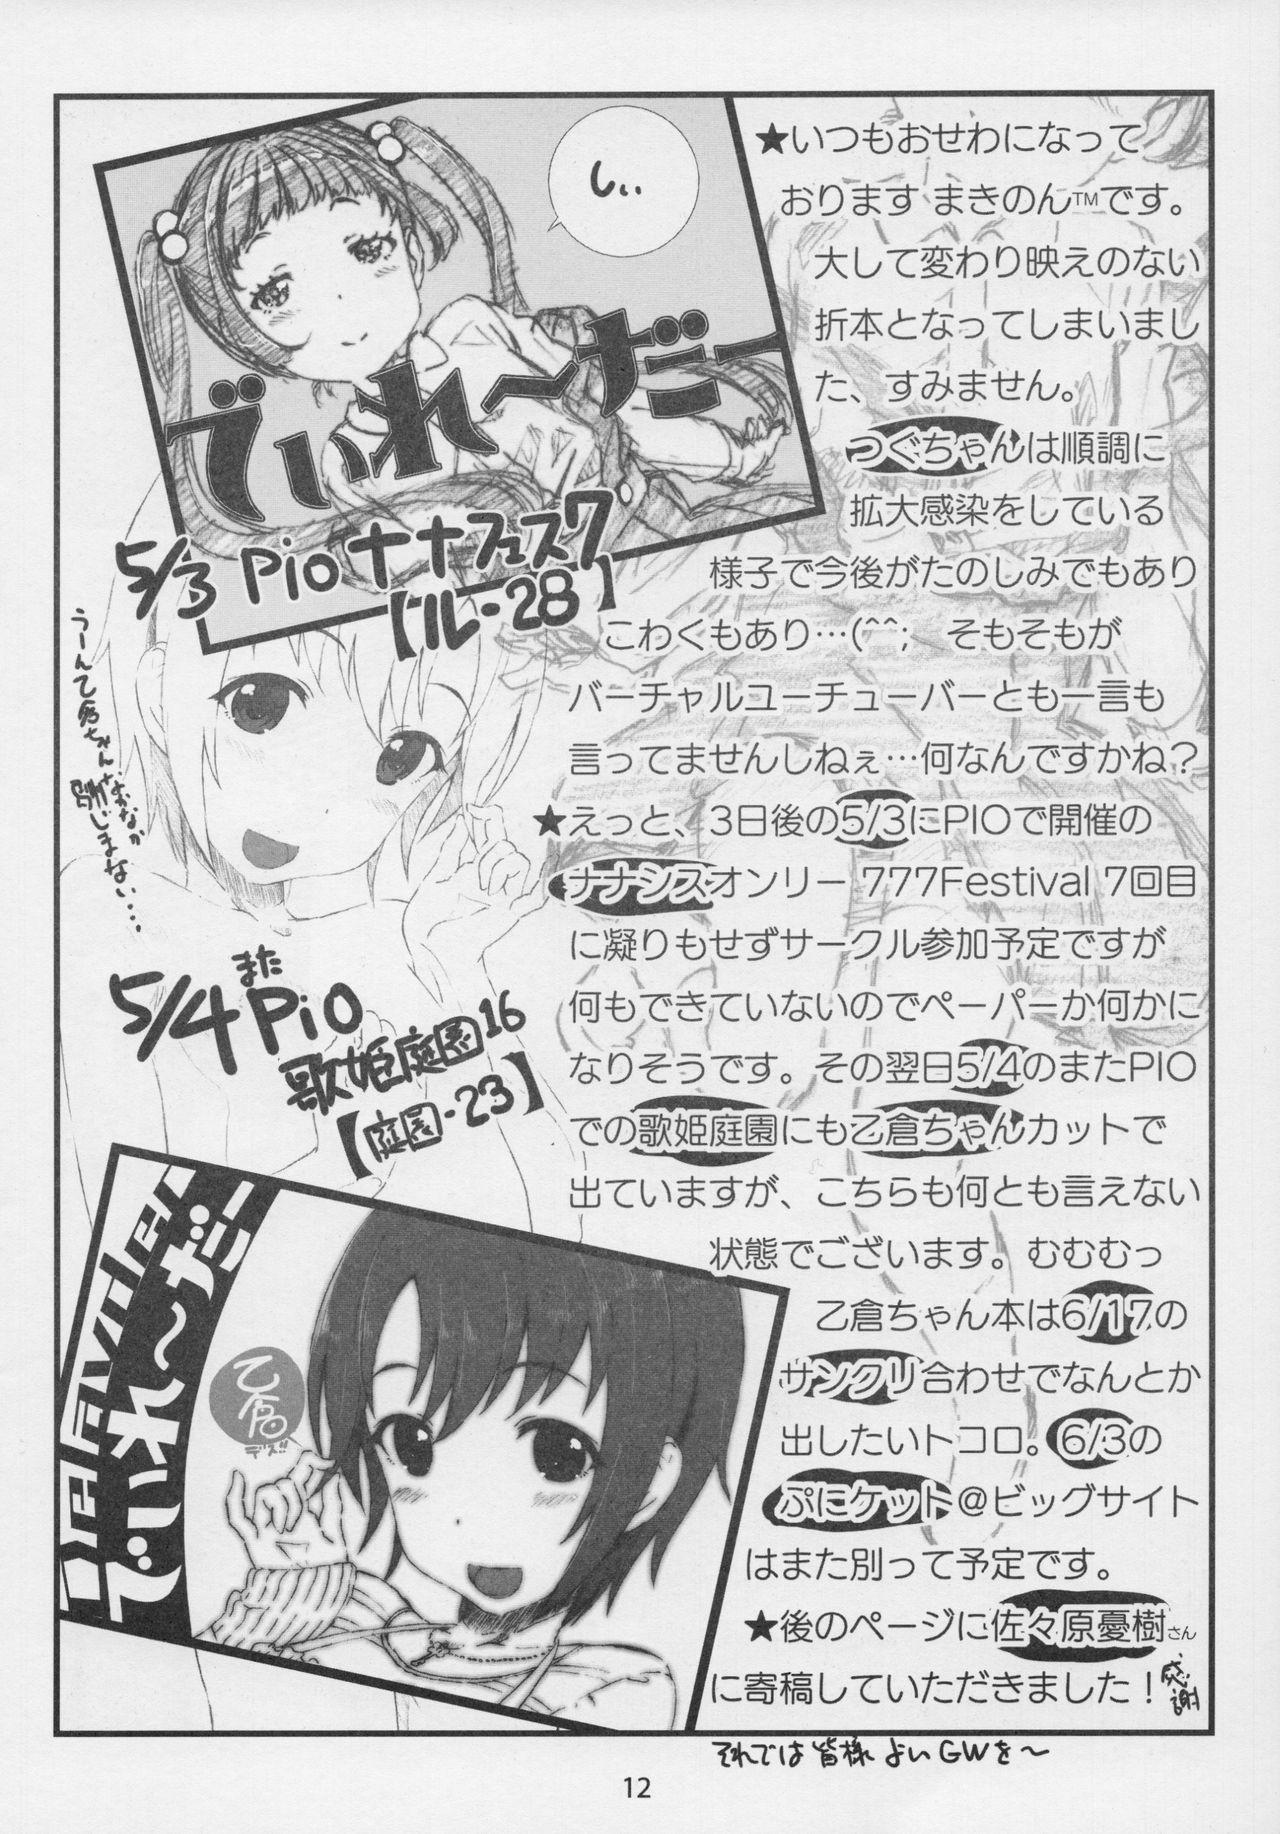 White Owari wo Tsugumono Free 18 Year Old Porn - Page 11